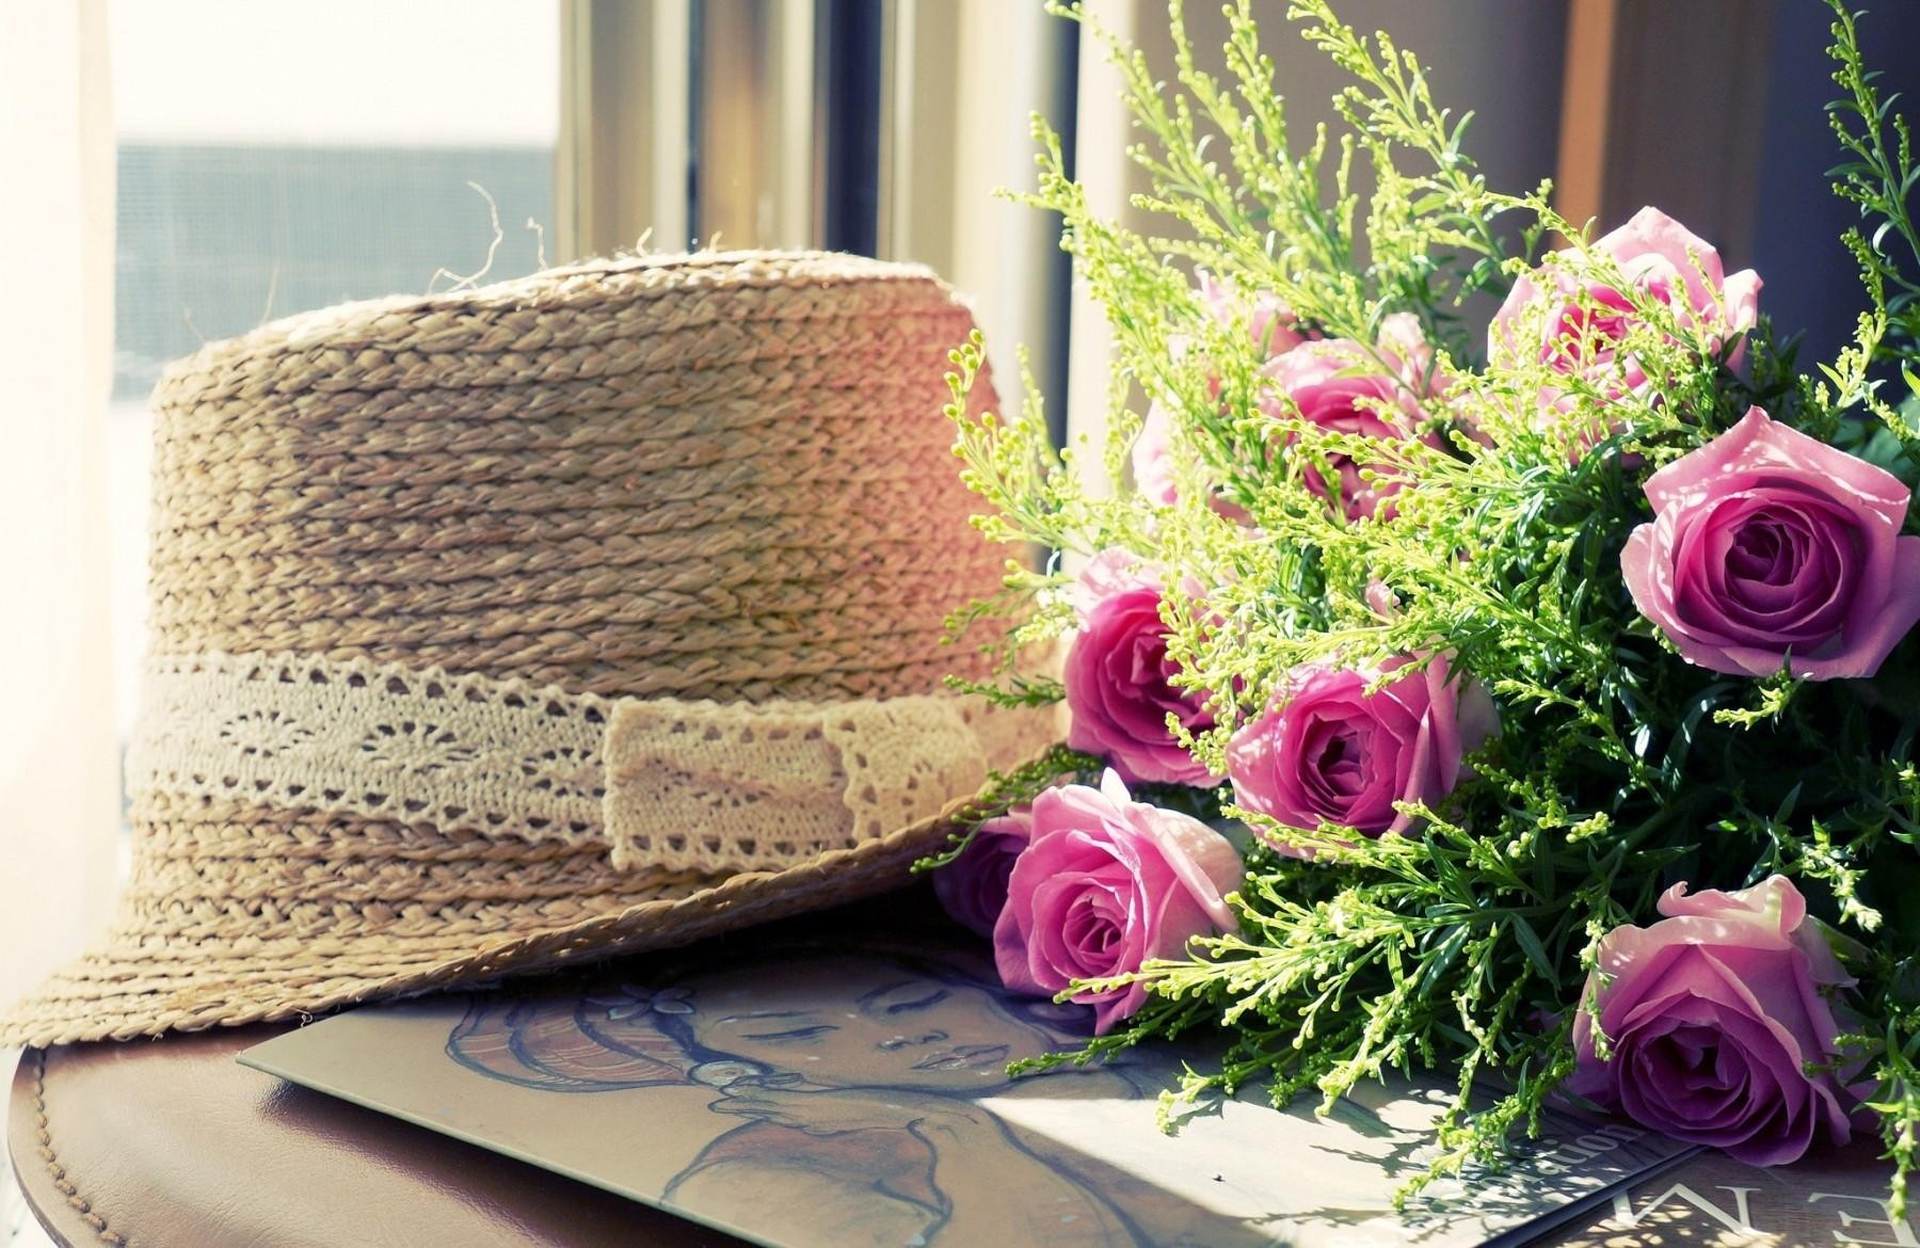 Шляпа растение. Шляпа с цветами. Шляпка с цветами, соломенная. Соломенная шляпа с цветами. Летняя шляпа с цветами.